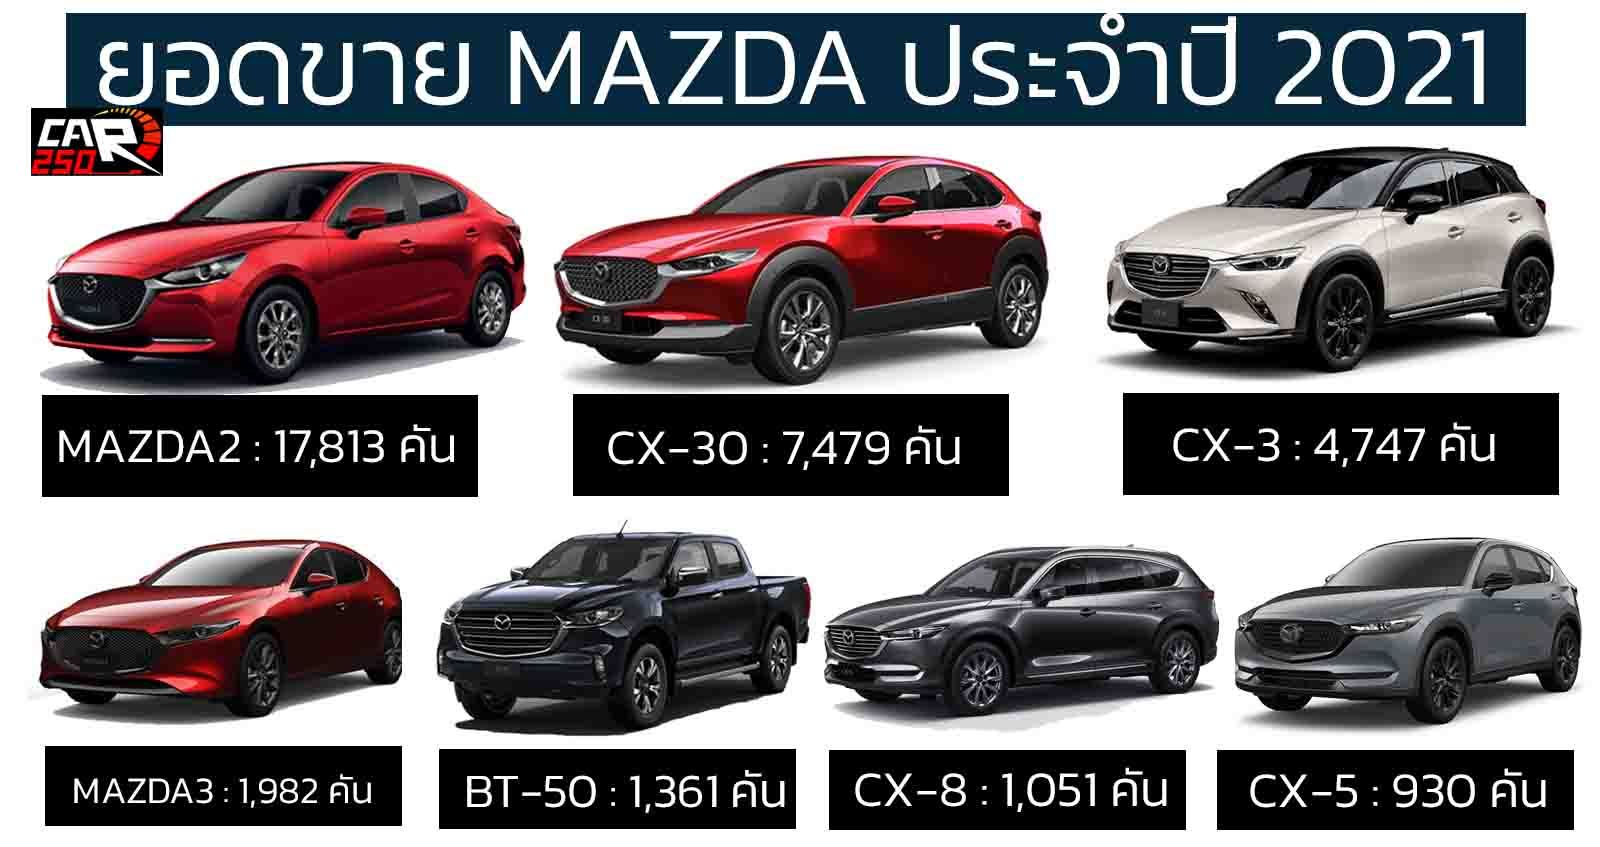 ยอดขาย MAZDA ประจำปี 2021 MAZDA2 ยังครองอันดับ 1 รวม 35,385 คัน